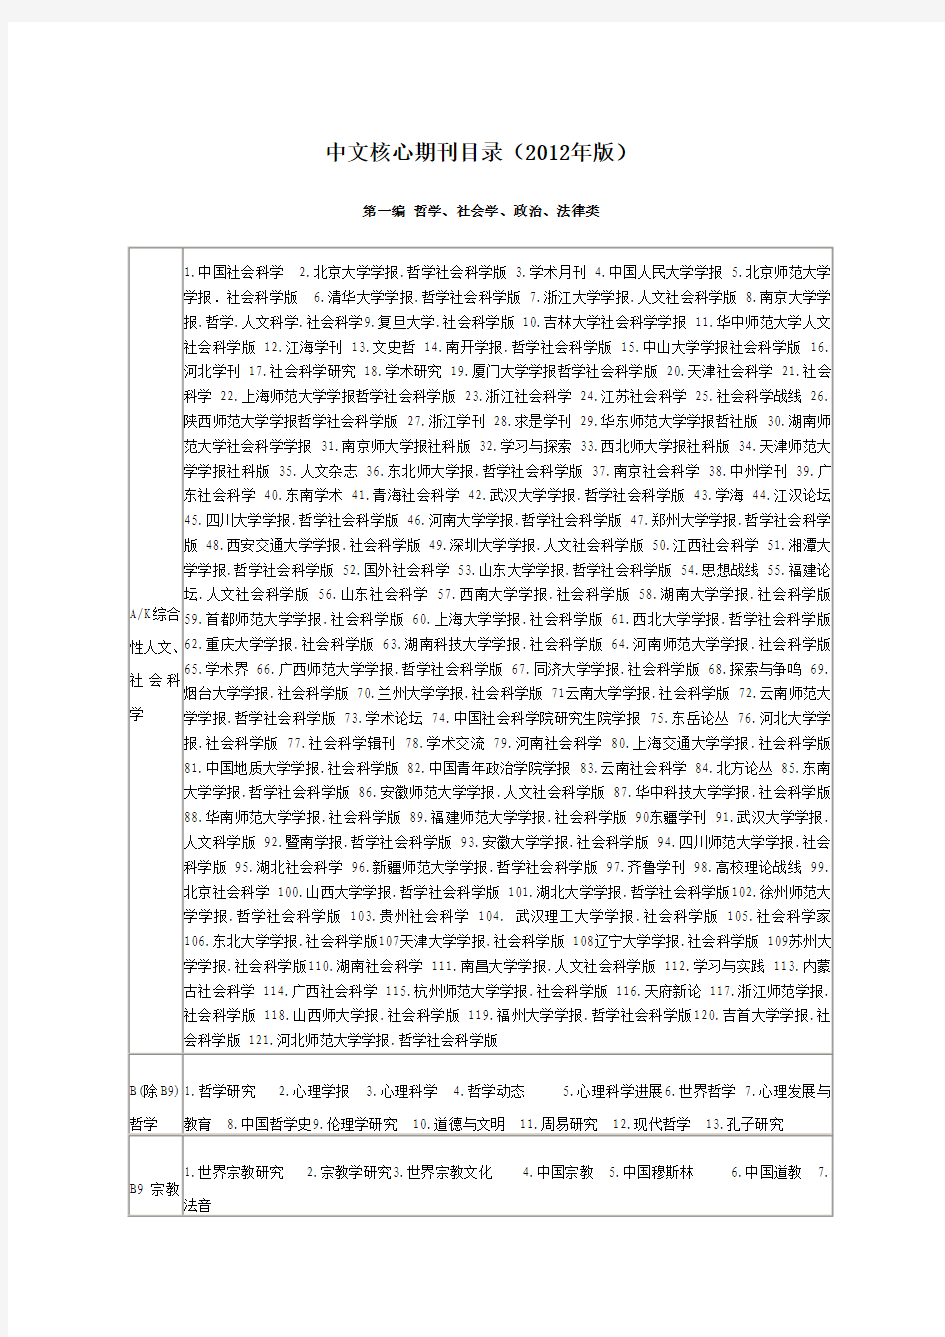 中文核心期刊目录(2012年版)